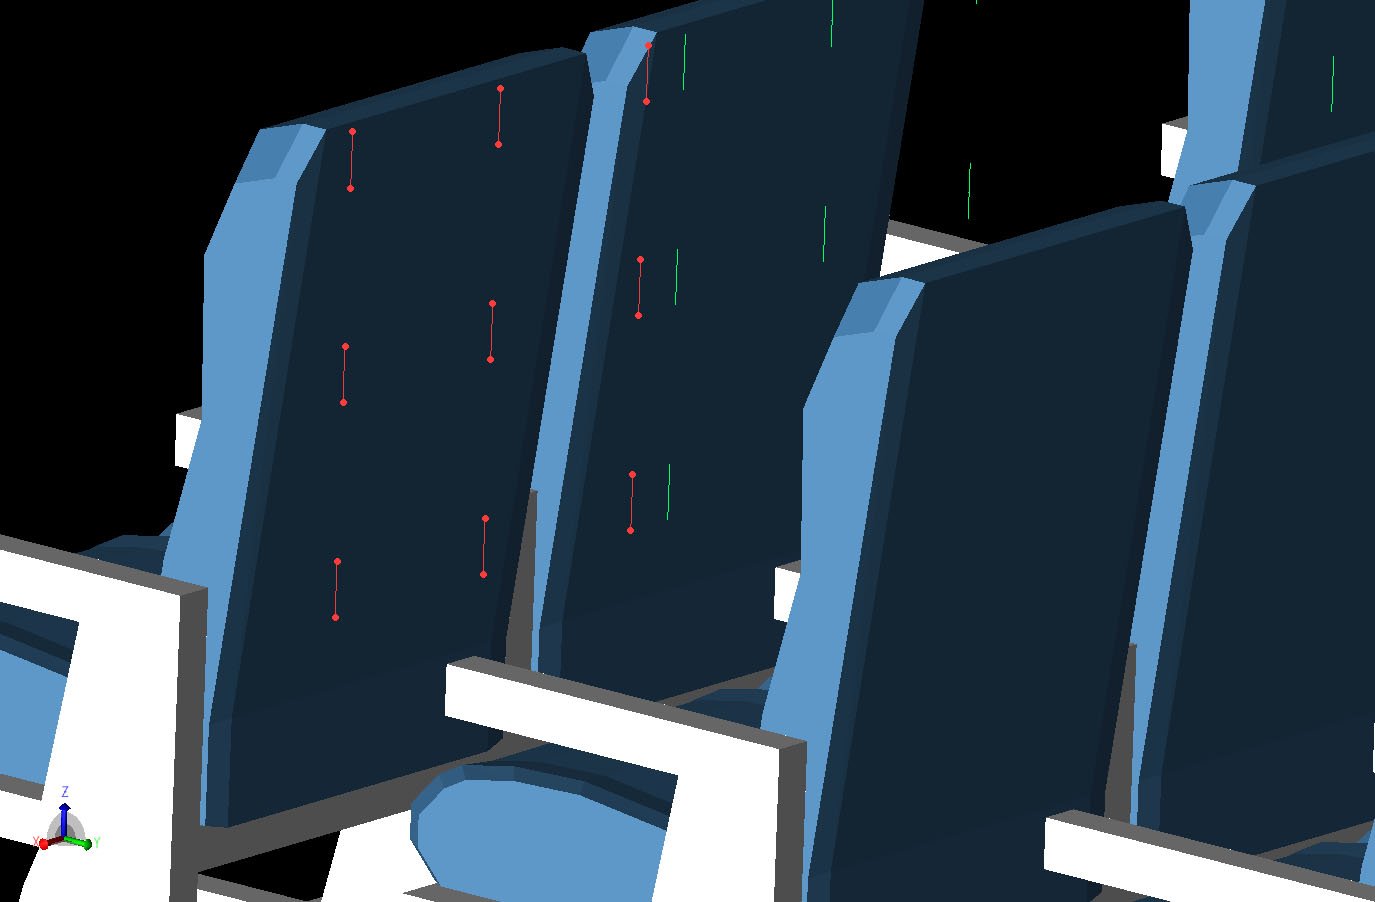 Figura 3La rejilla 3x3 de ubicaciones de sensores definidos como dipolos se muestra detrás de una de las ubicaciones del respaldo de los asientos. Las rejillas de sensores están situadas detrás de los asientos en cada dos filas de la cabina para las tres primeras columnas de asientos.